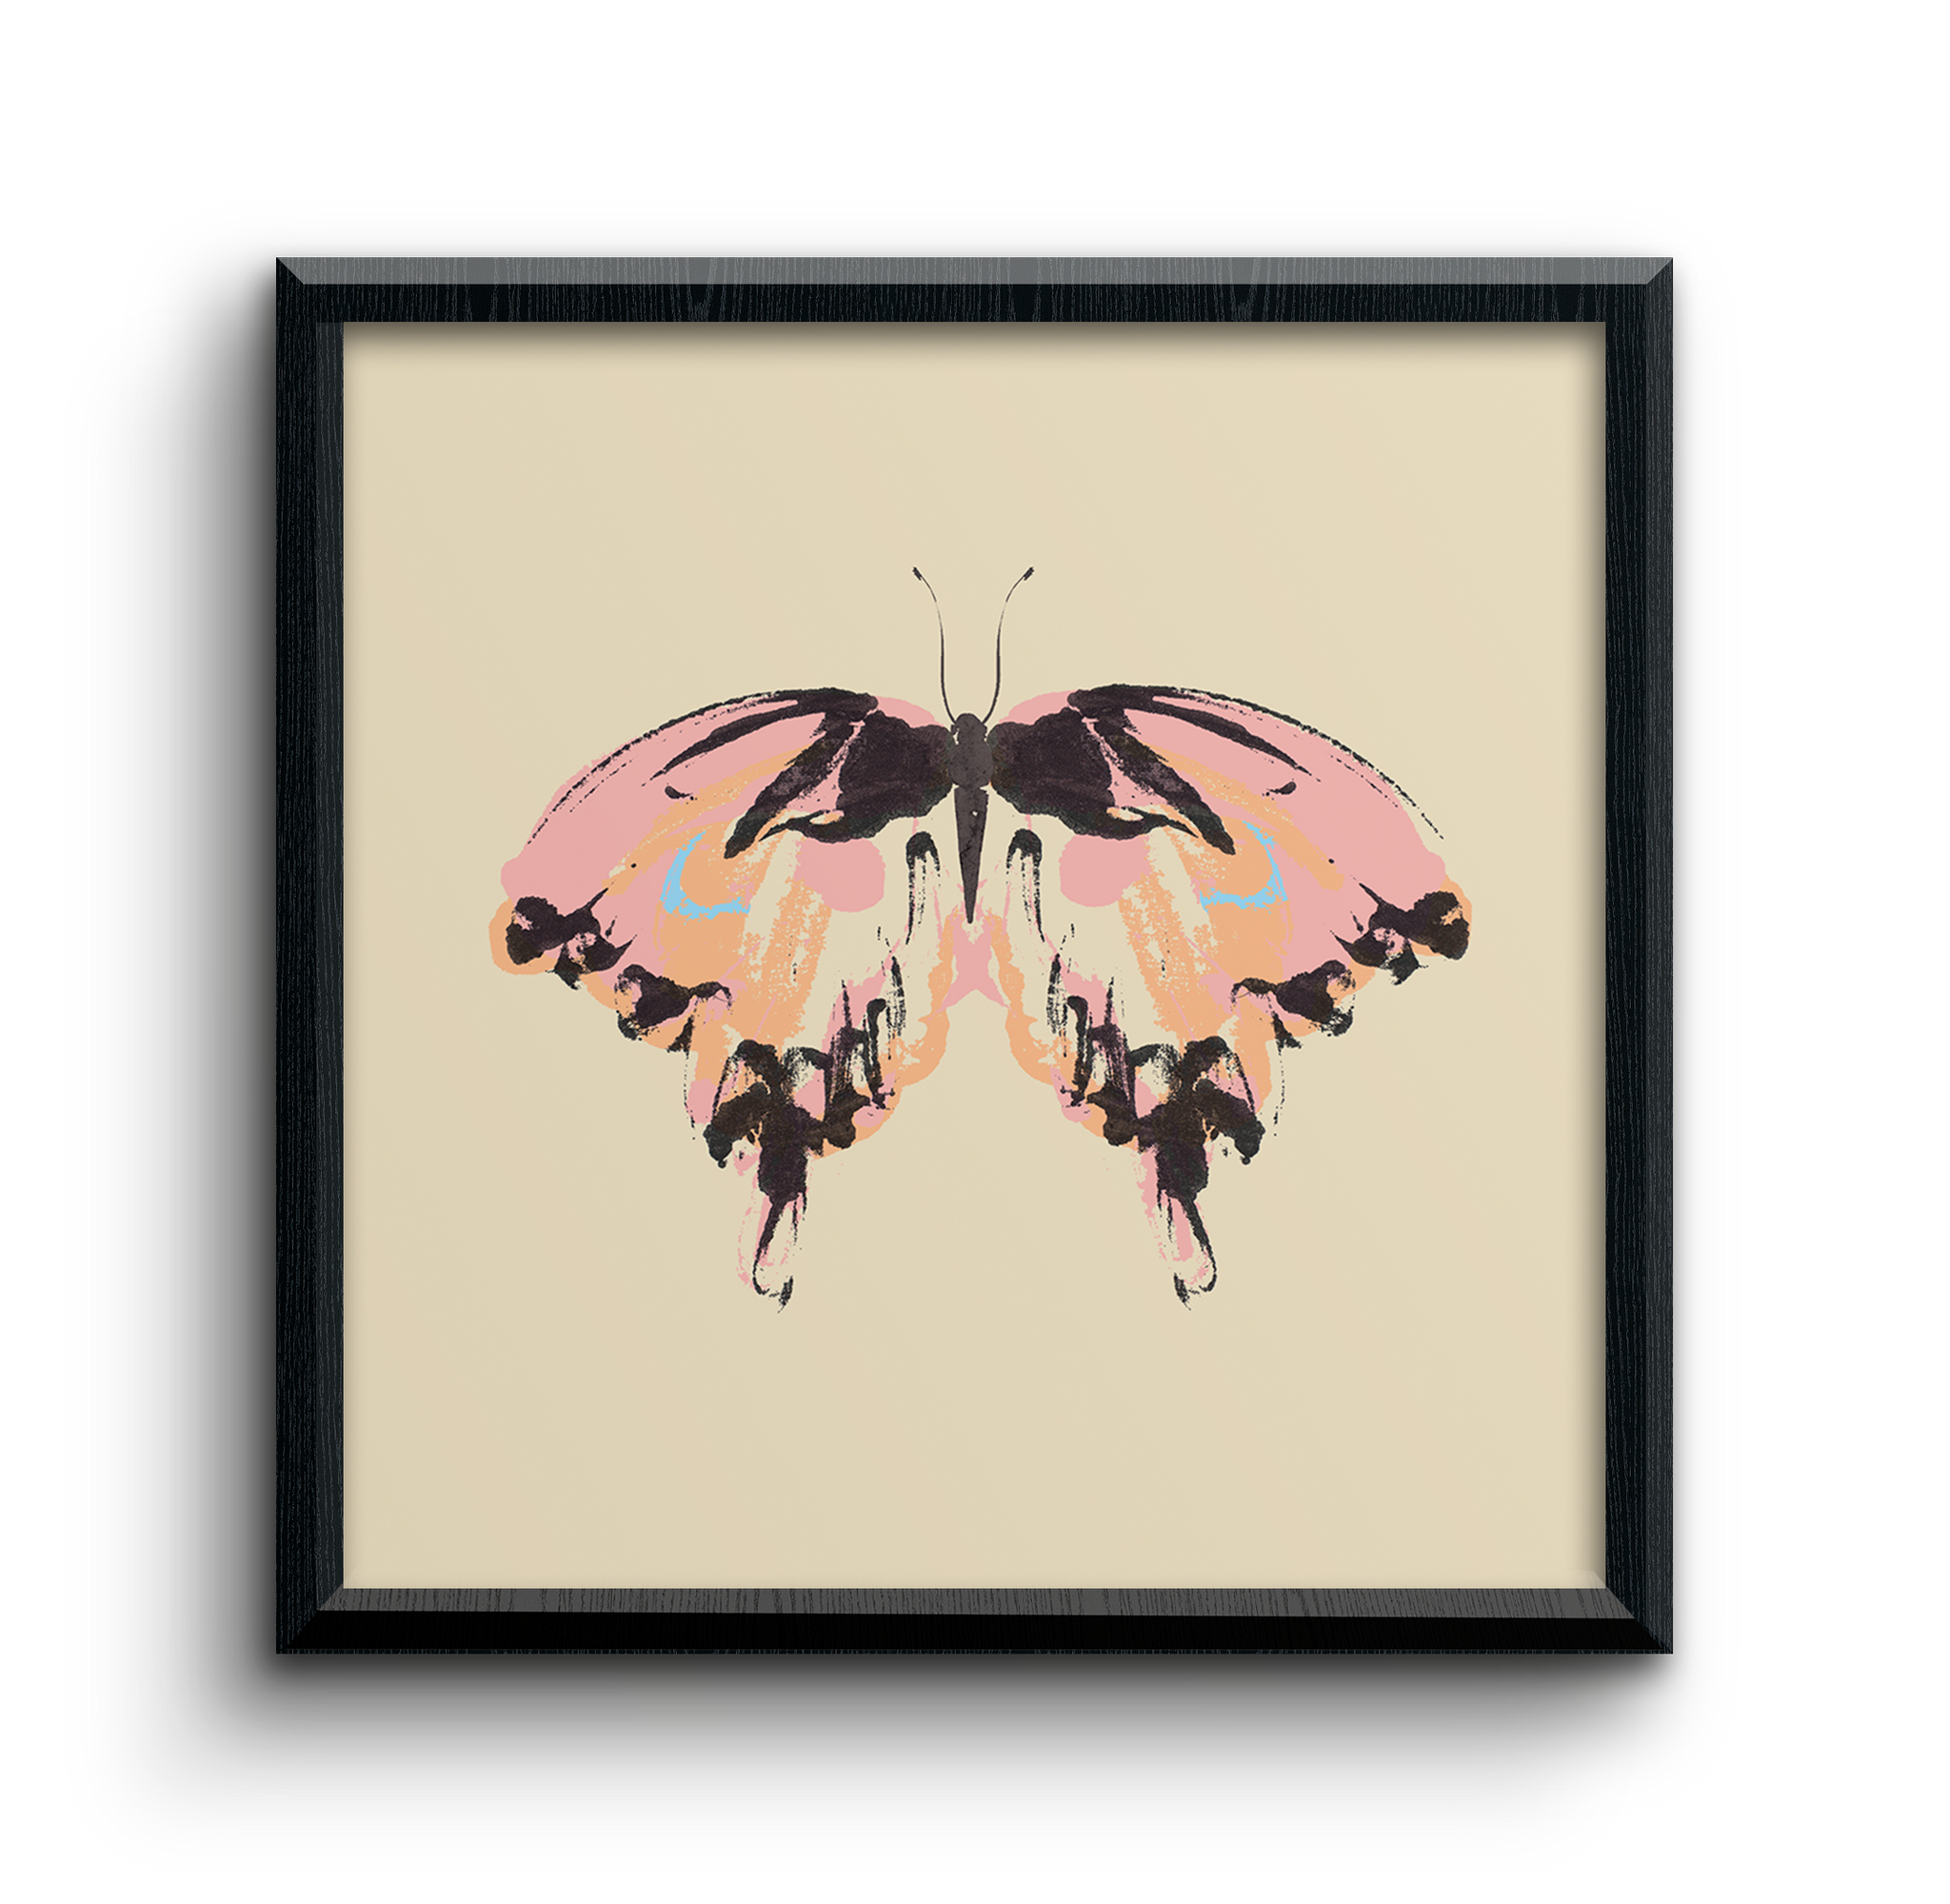 Butterfly art print